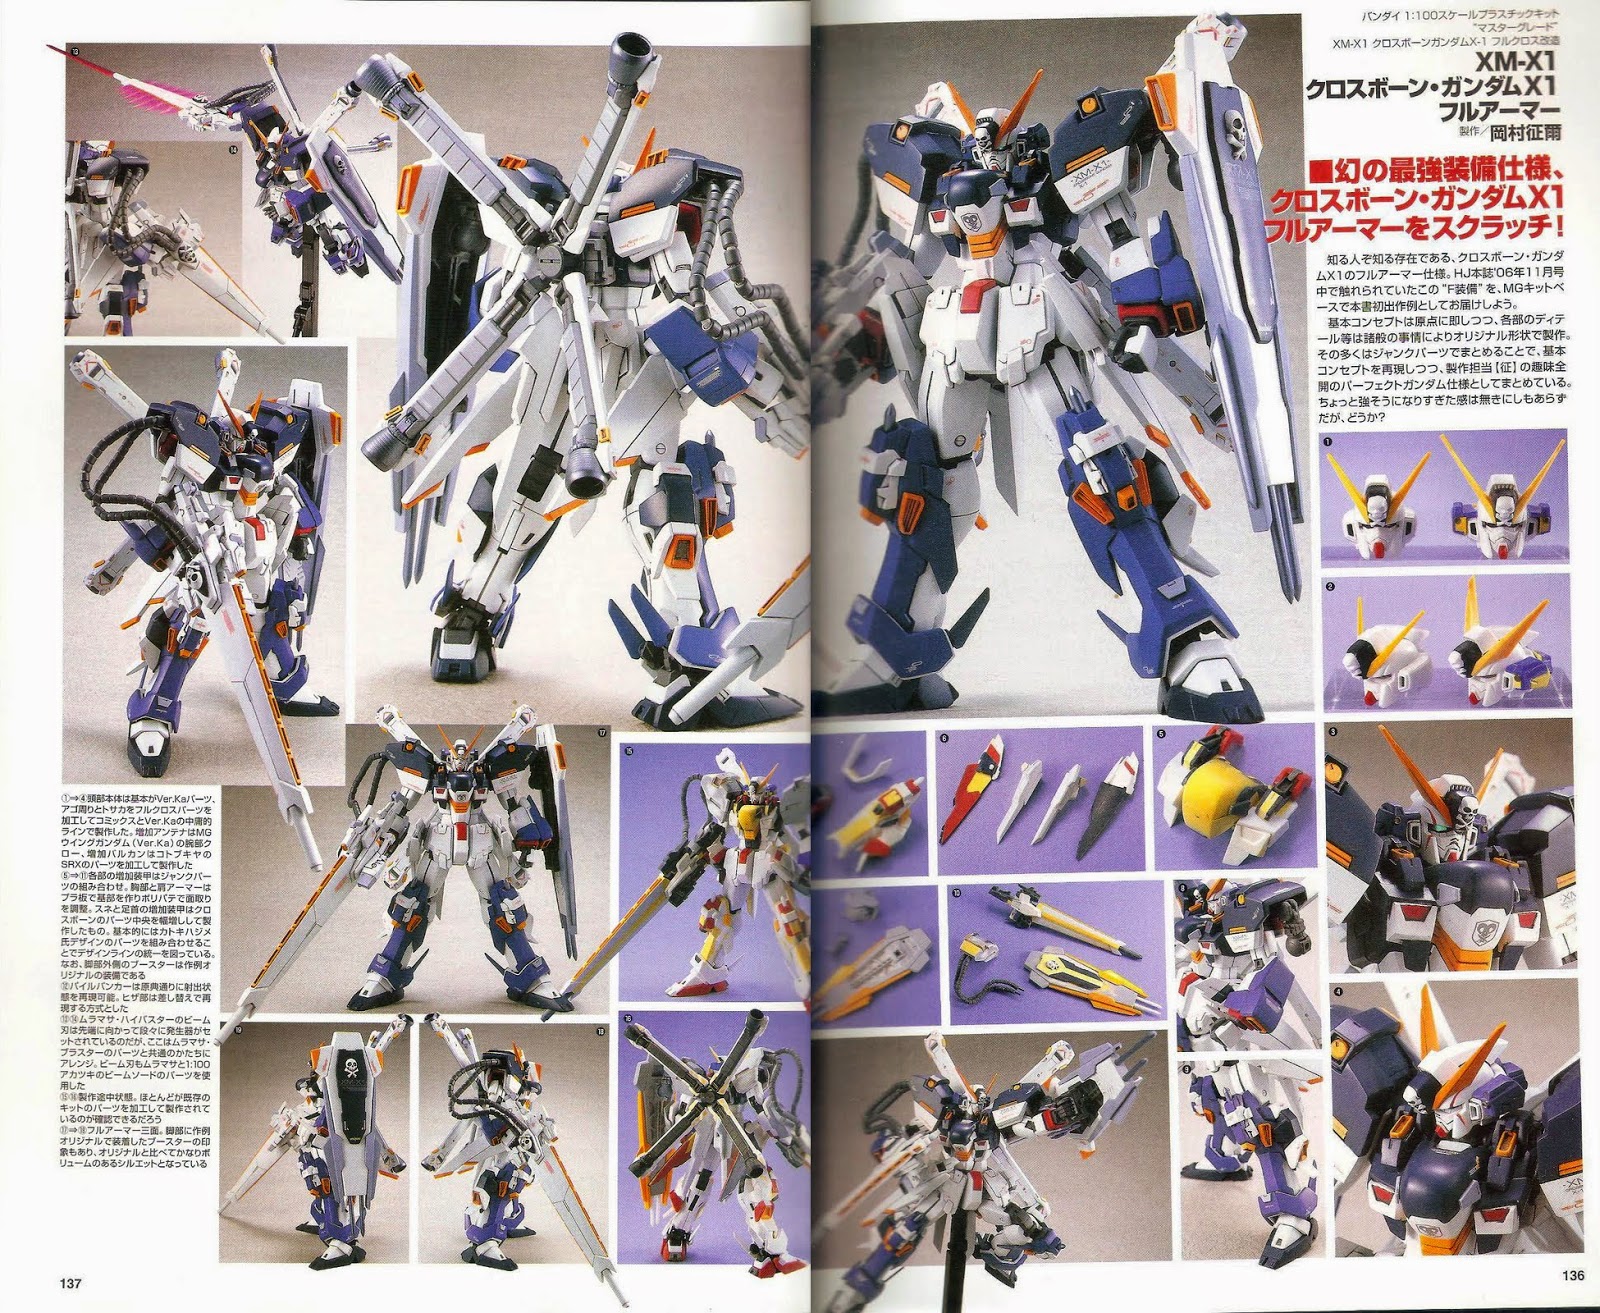 GUNDAM GUY: MG 1/100 XM-X1 Crossbone Gundam X1 Full Armor - Custom Build